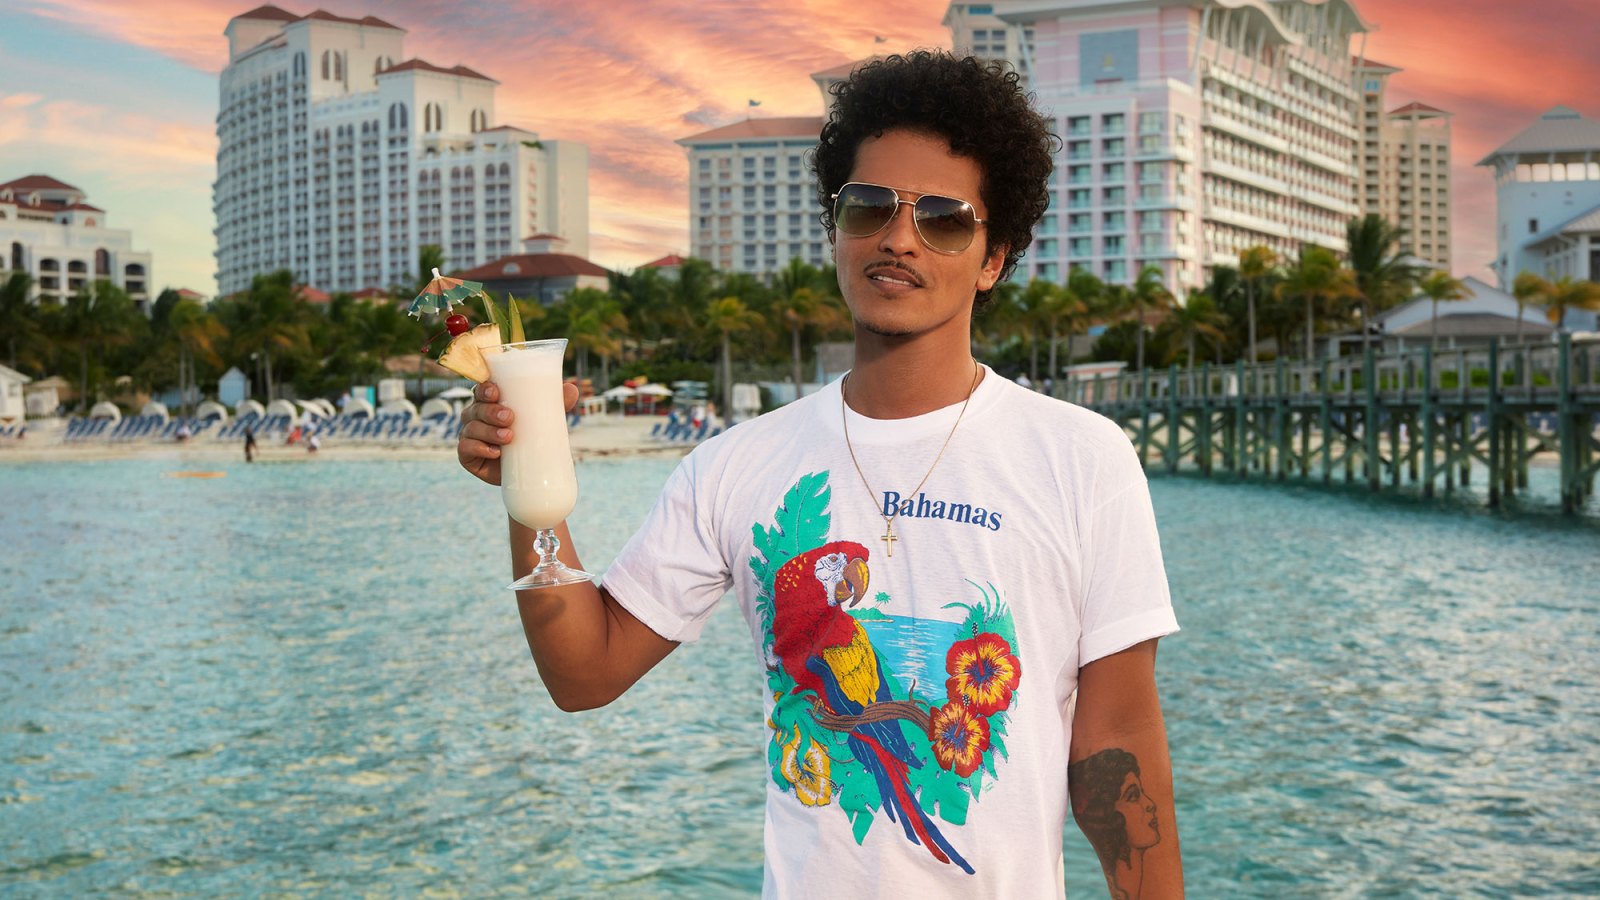 Bruno Mars Performs at Baha Mar in Bahamas to Celebrate SelvaRey Rum 4